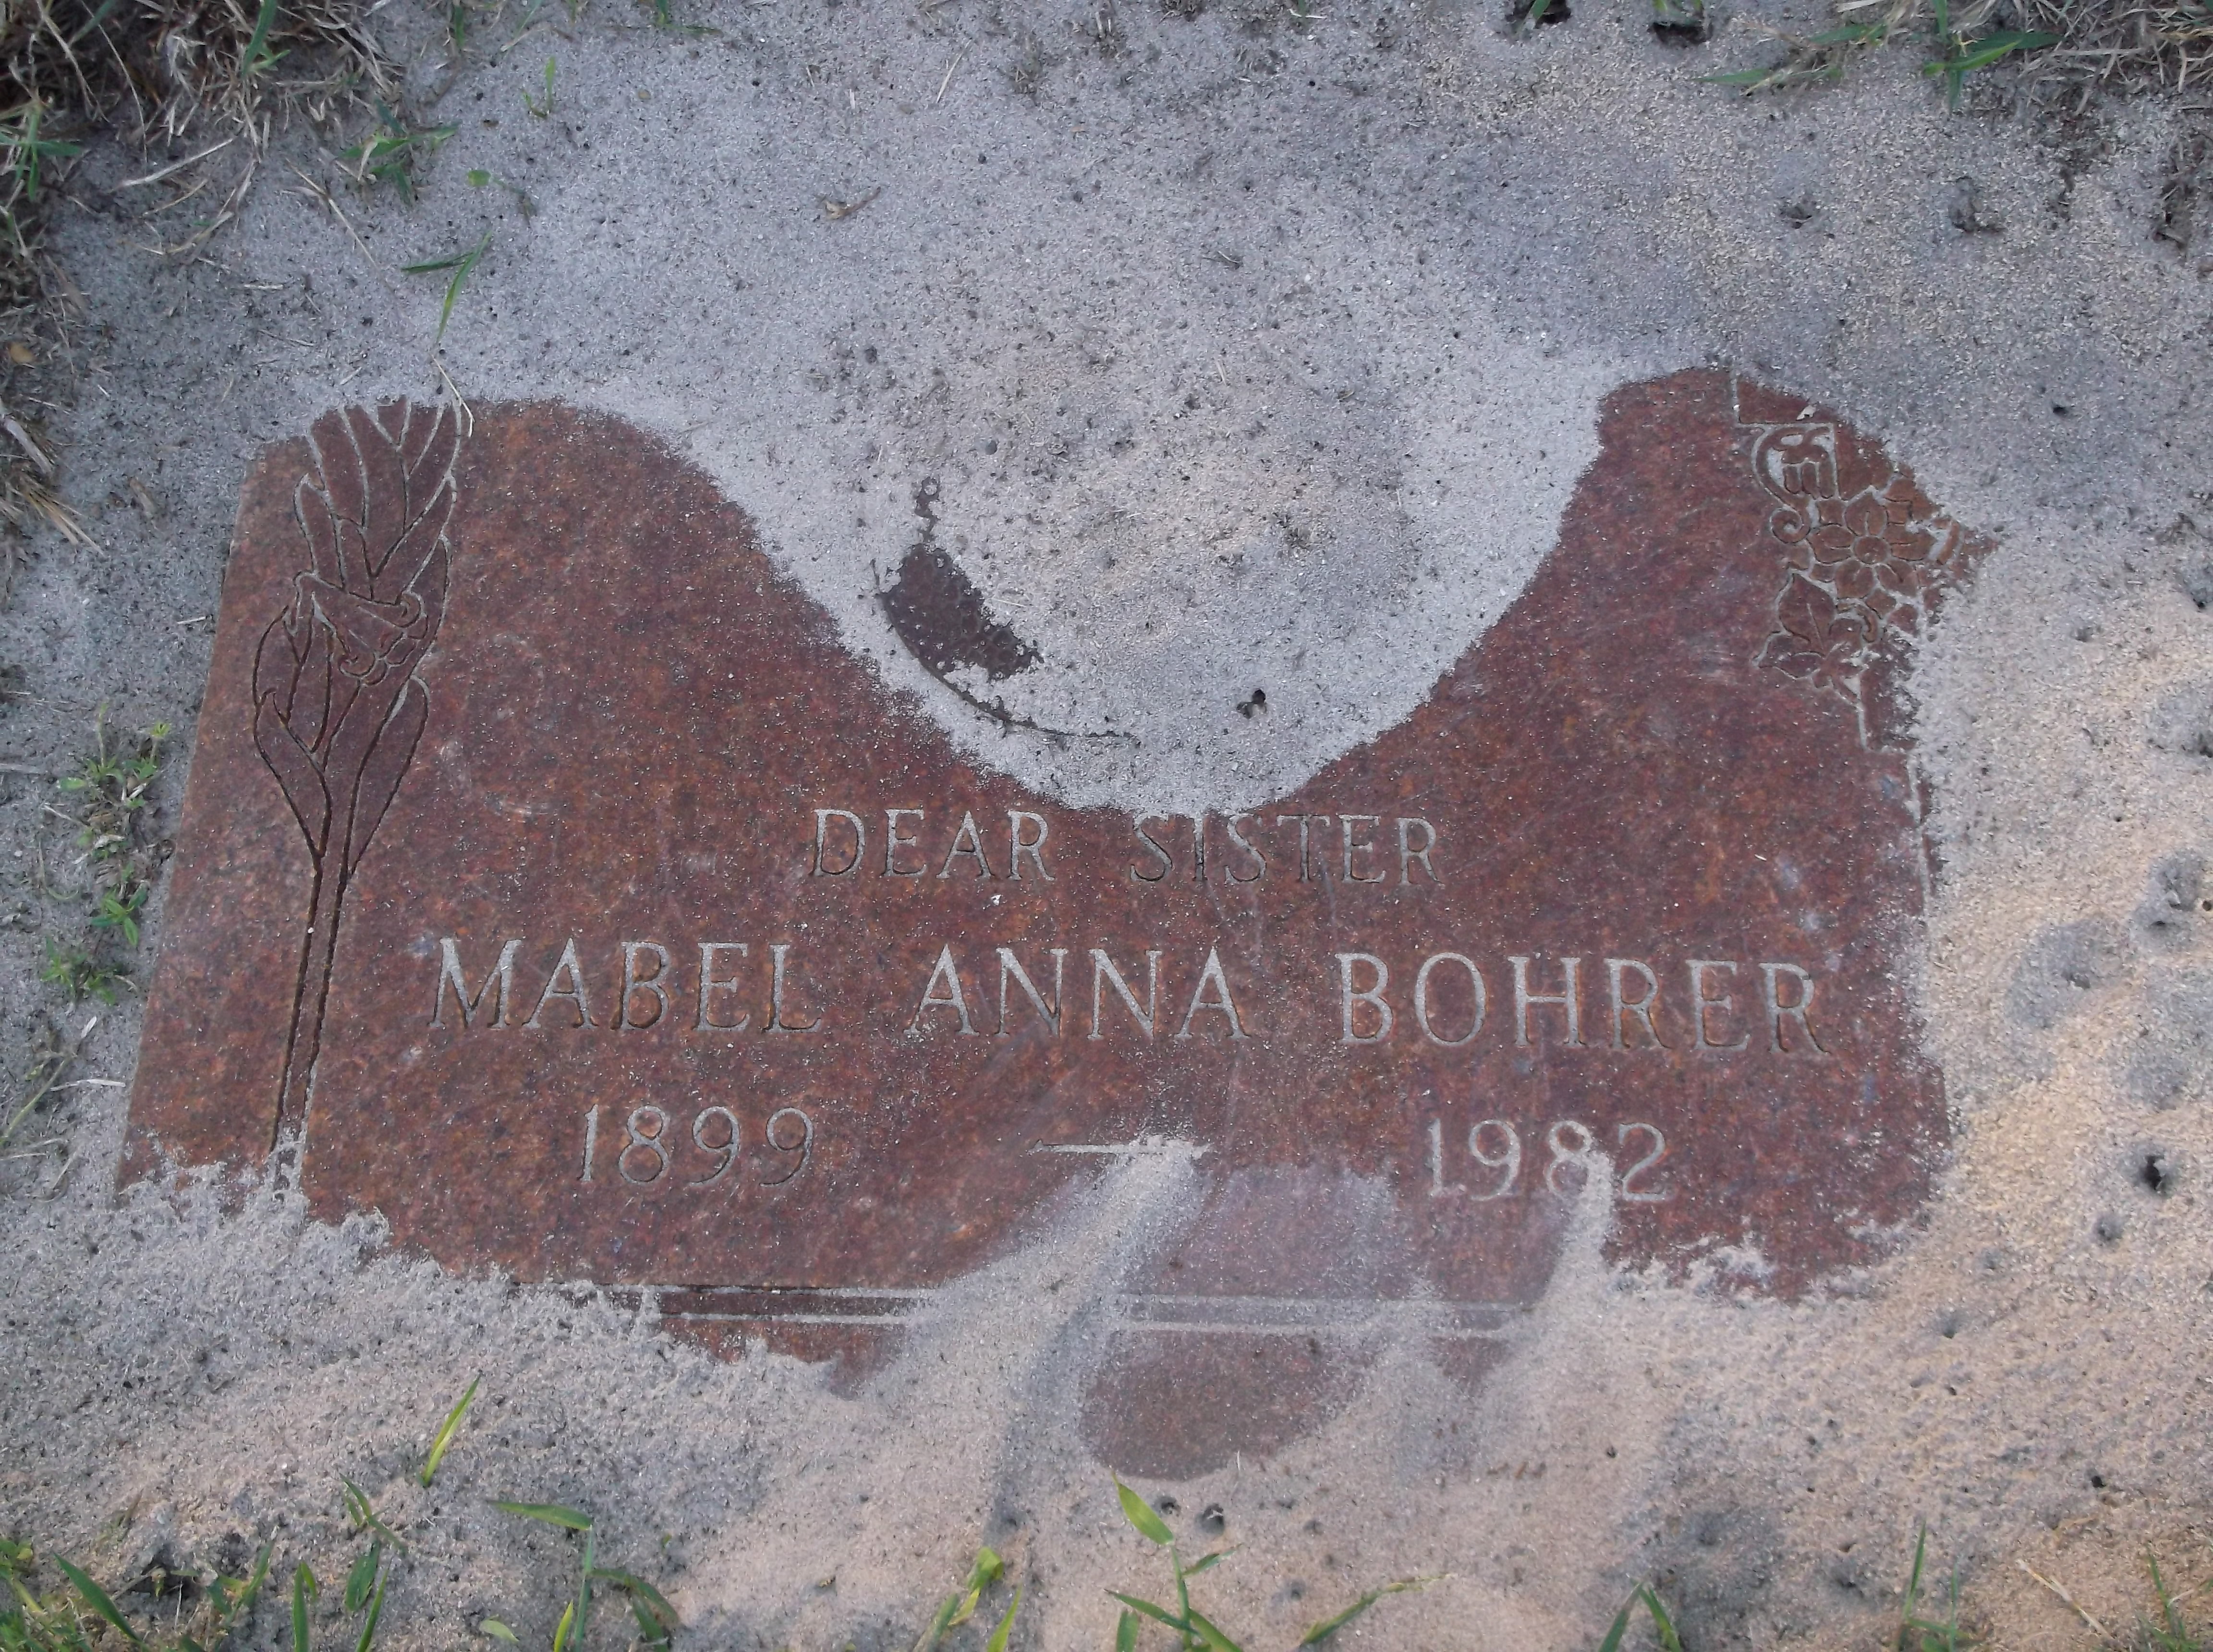 Mabel Anna Bohrer